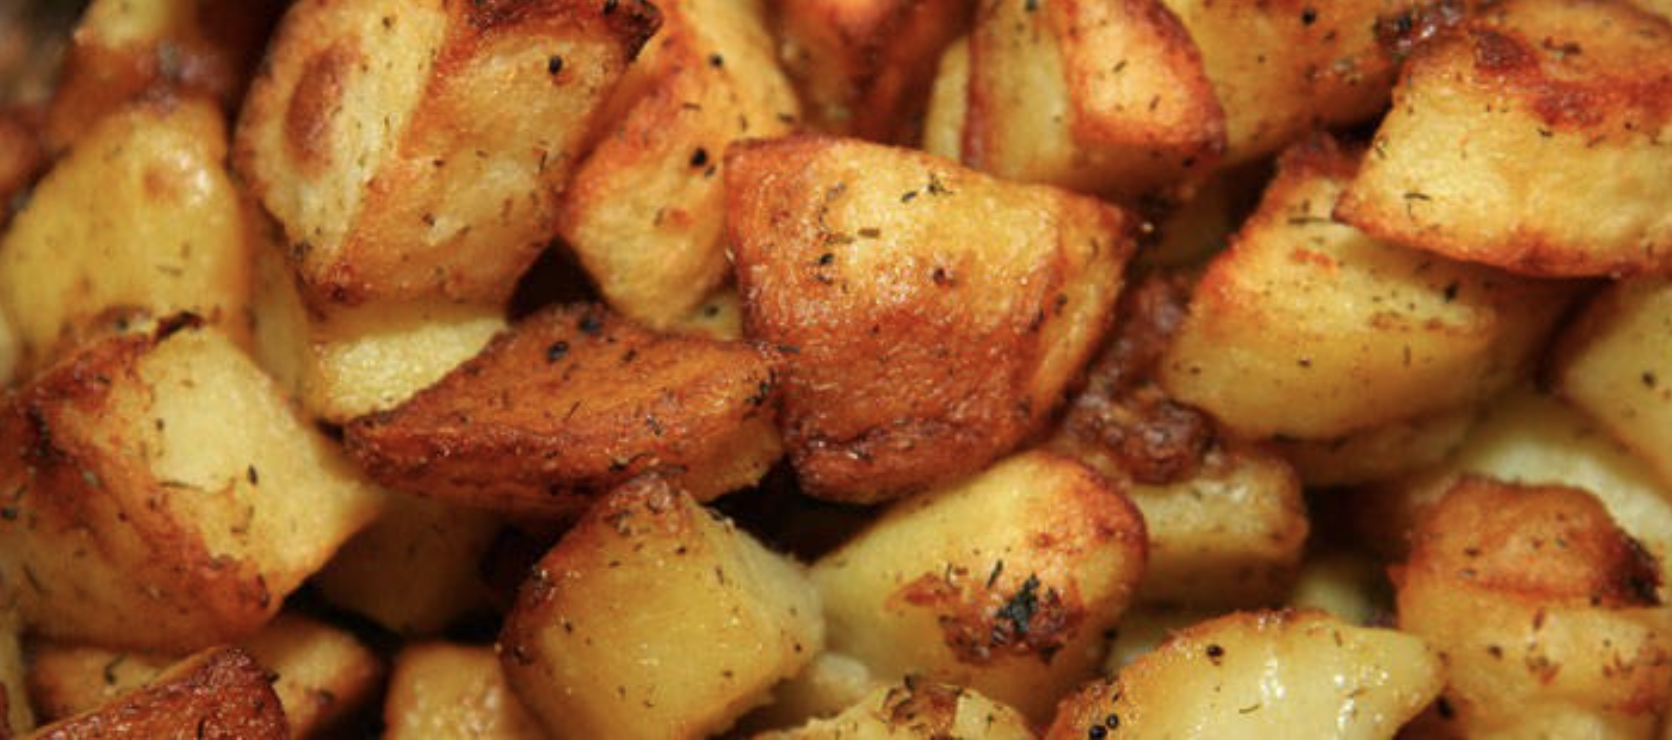 il-segreto-per-avere-patate-al-forno-super-croccanti-come-fritte?-bisognare-usare-il-miele